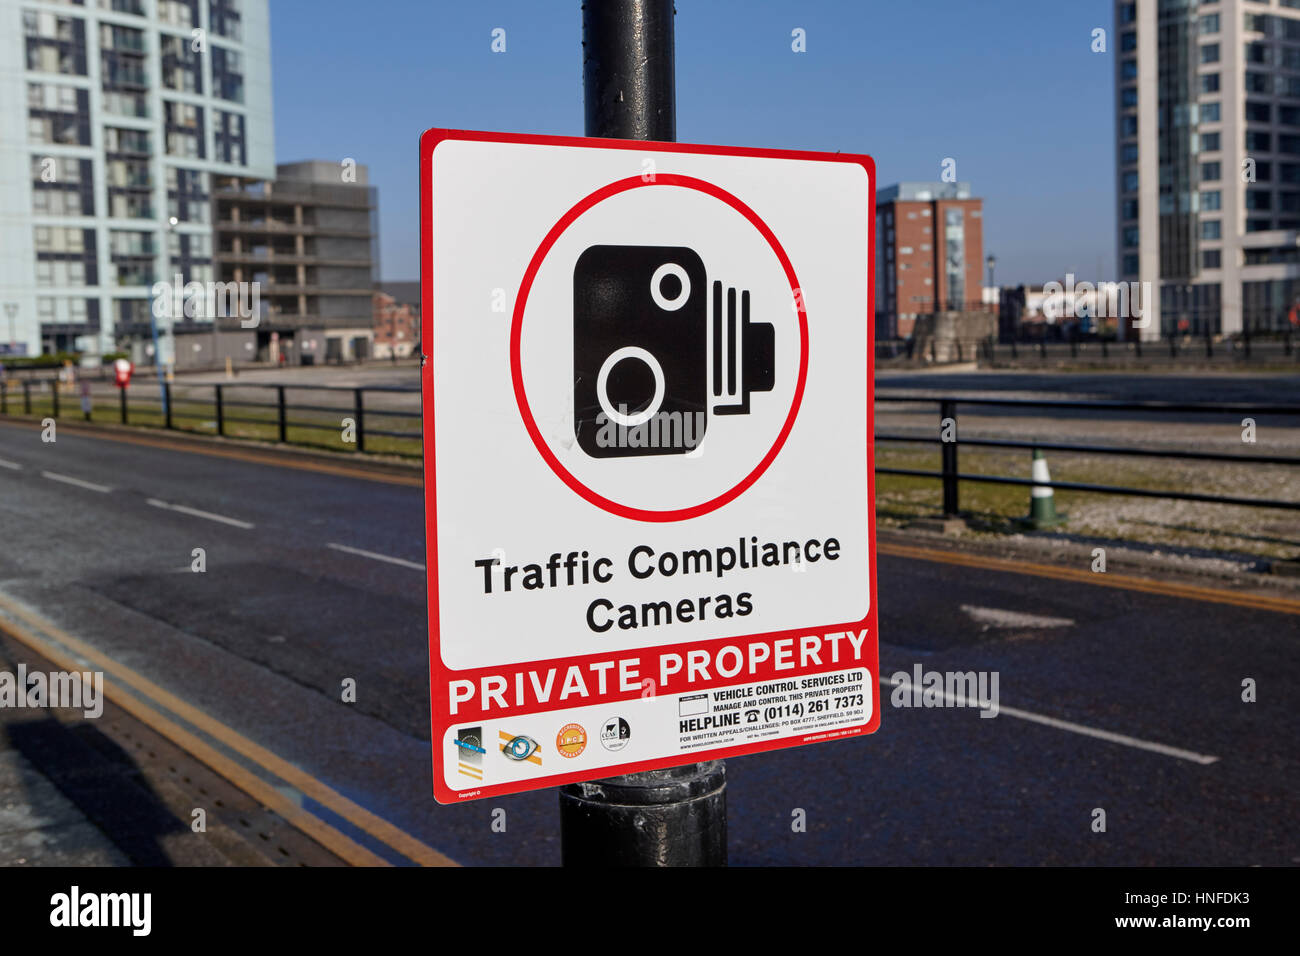 Cartelli di avvertimento per il traffico rispetto videocamere su proprietà privata in liverpool docklands regno unito Foto Stock